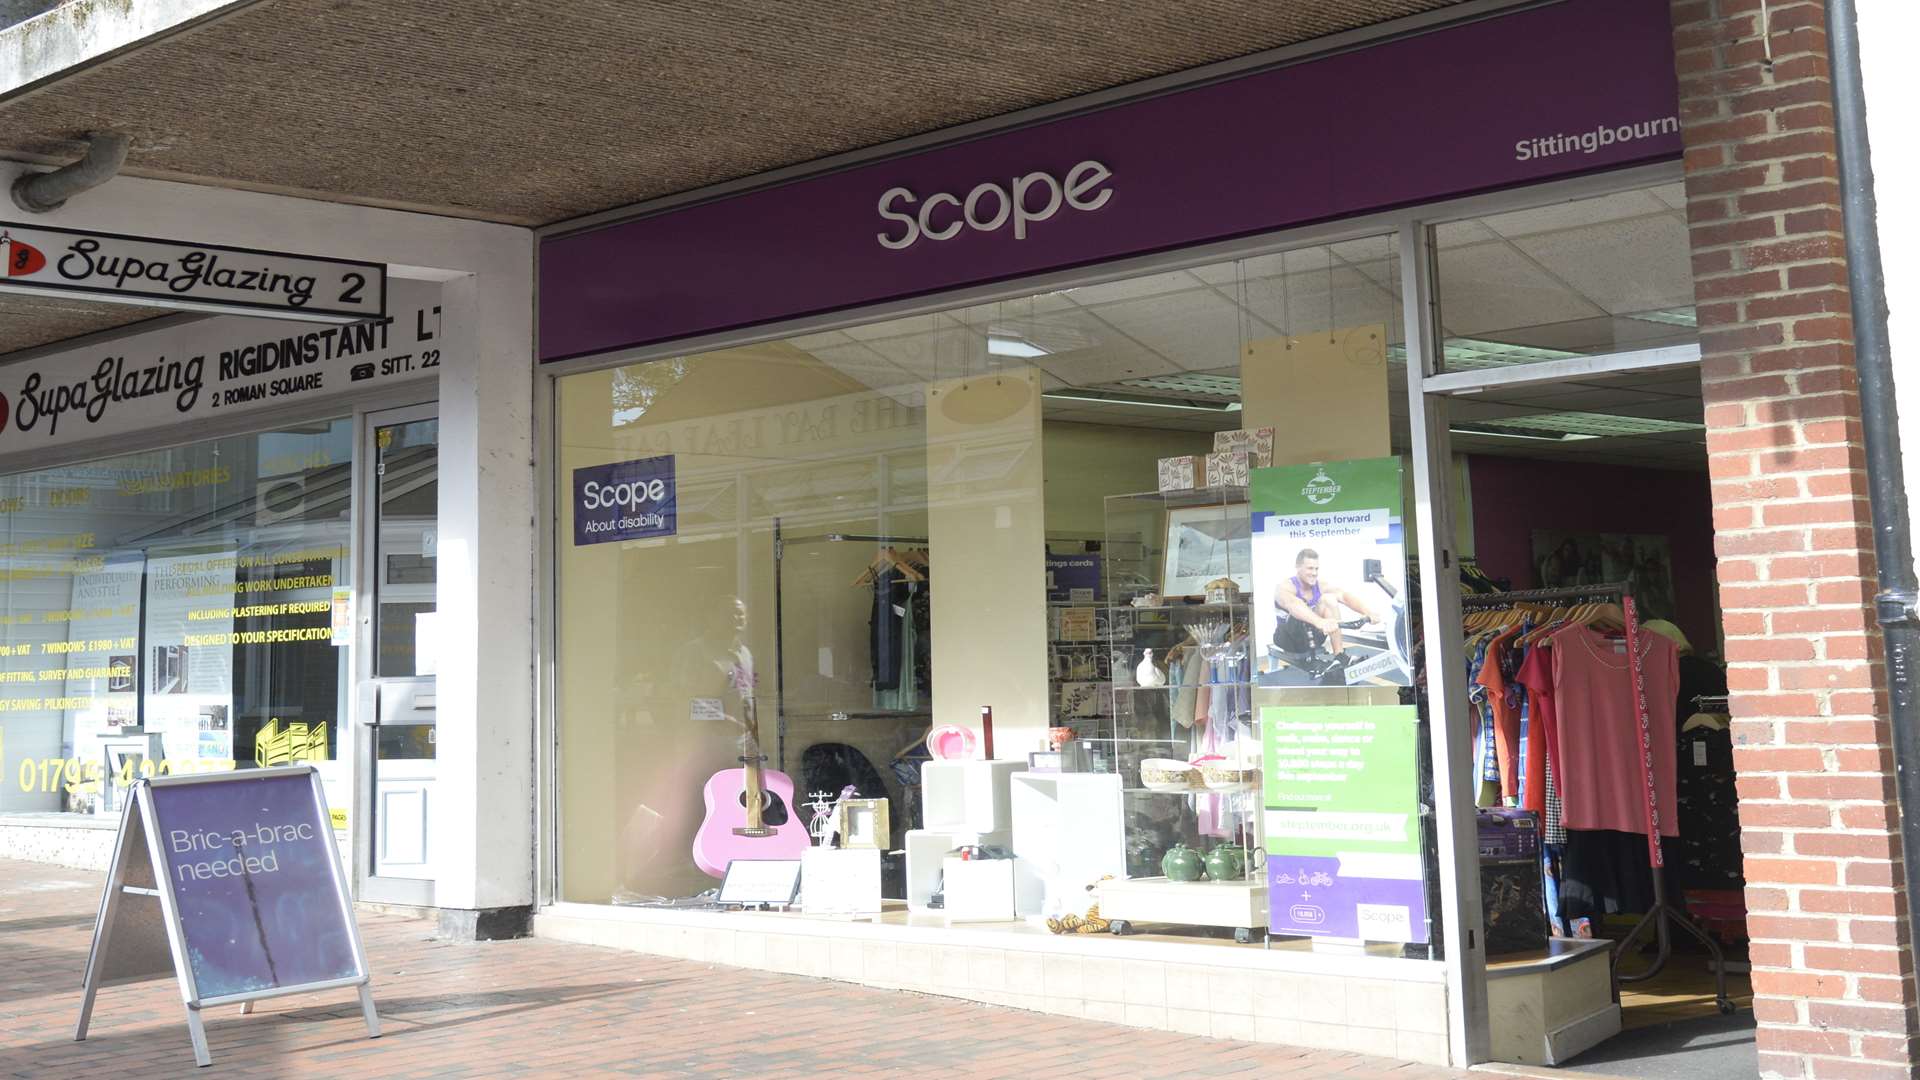 The Scope shop in Roman Square, Sittingbourne